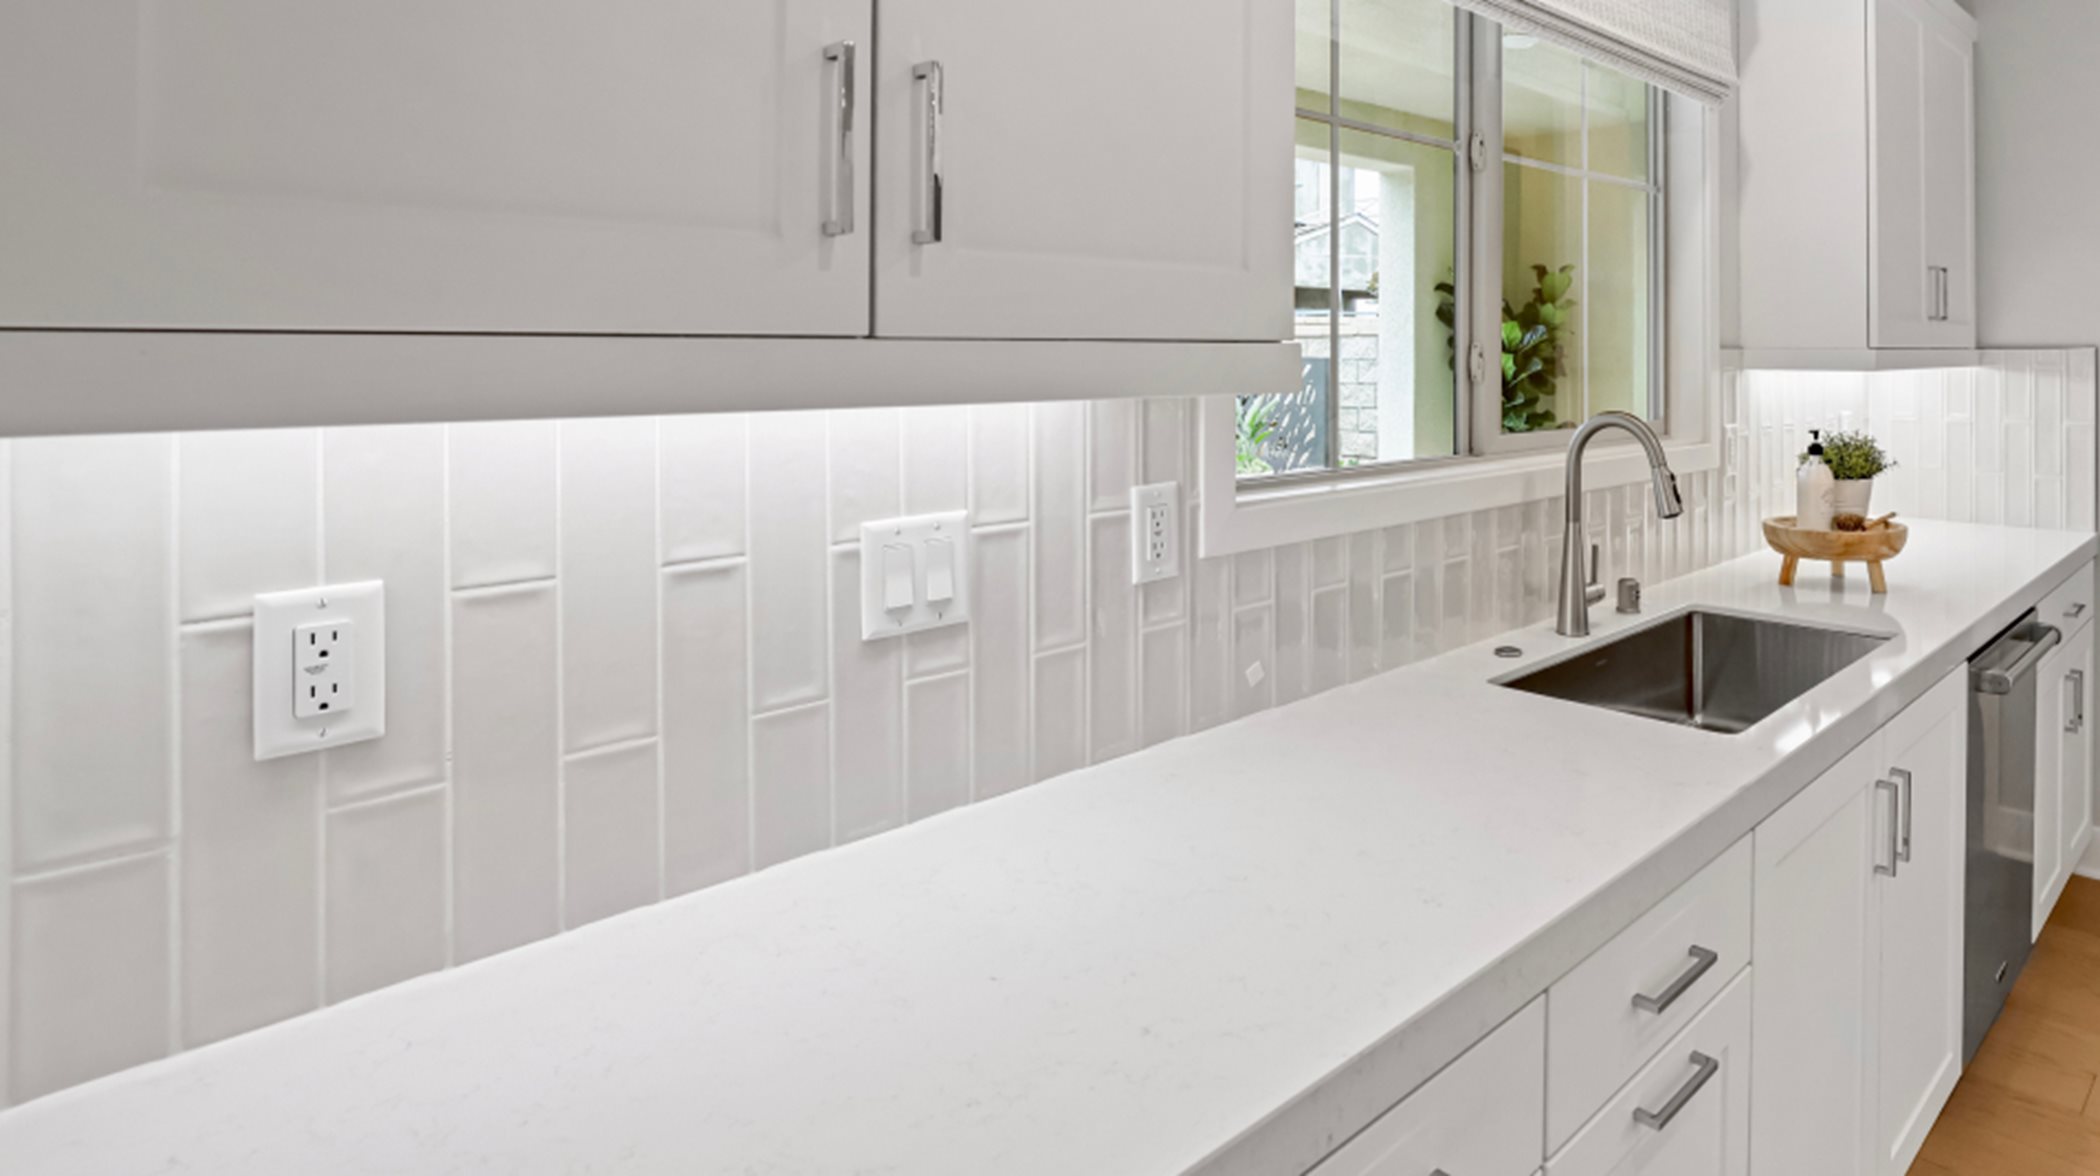 Undercabinet task lighting to illuminate kitchen counters